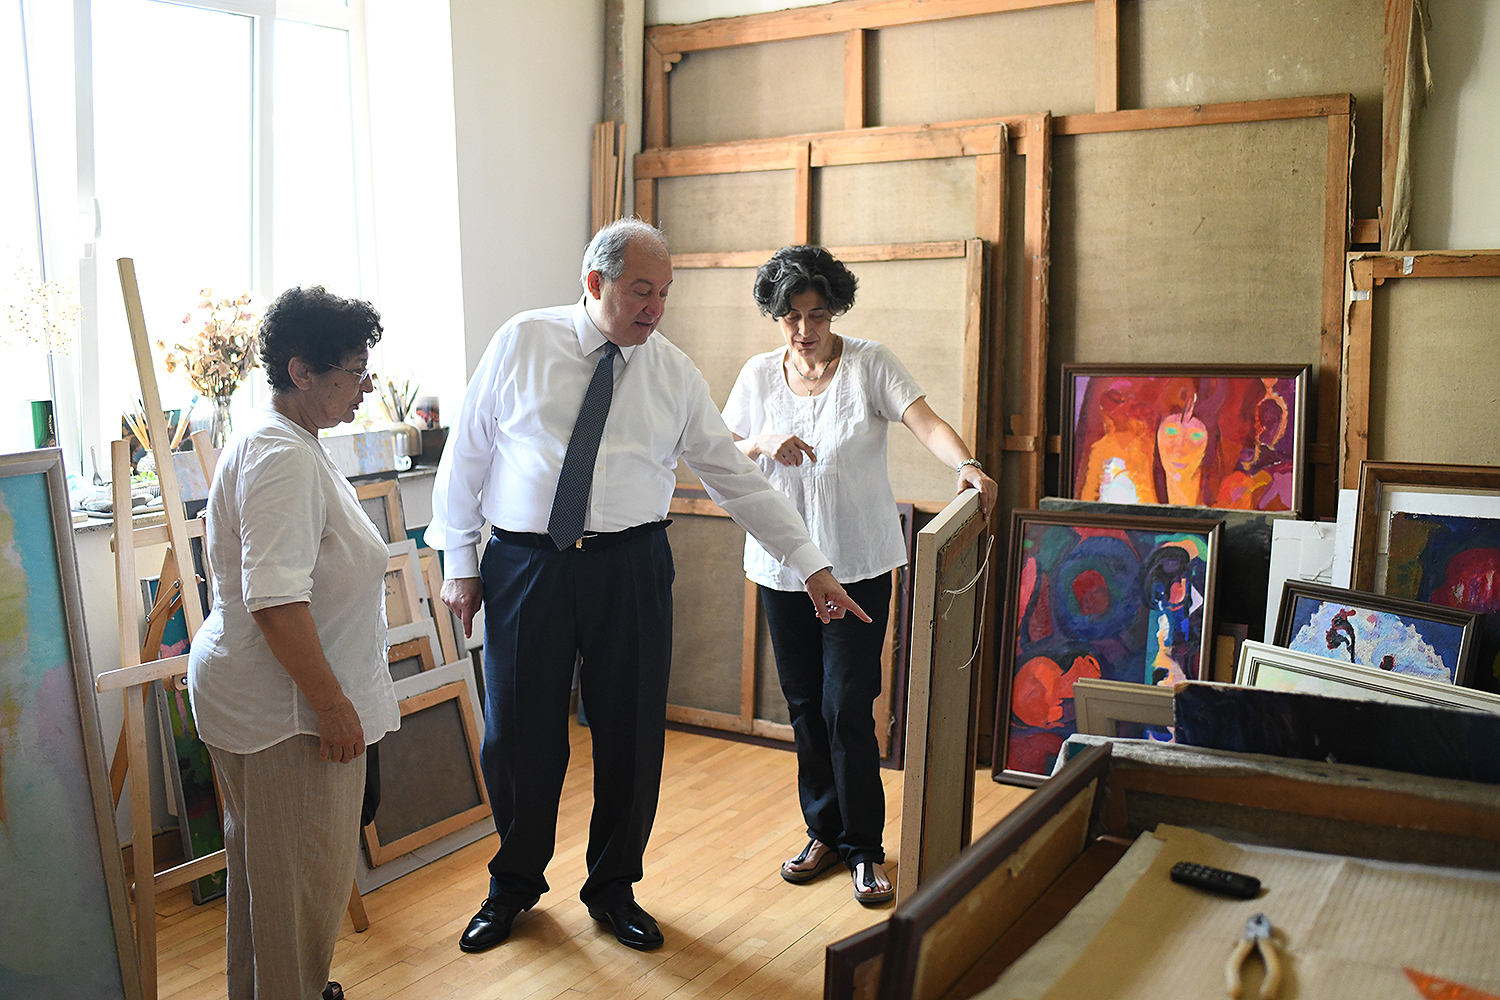 President visited the artist Hovhannes Zardarian’s studio